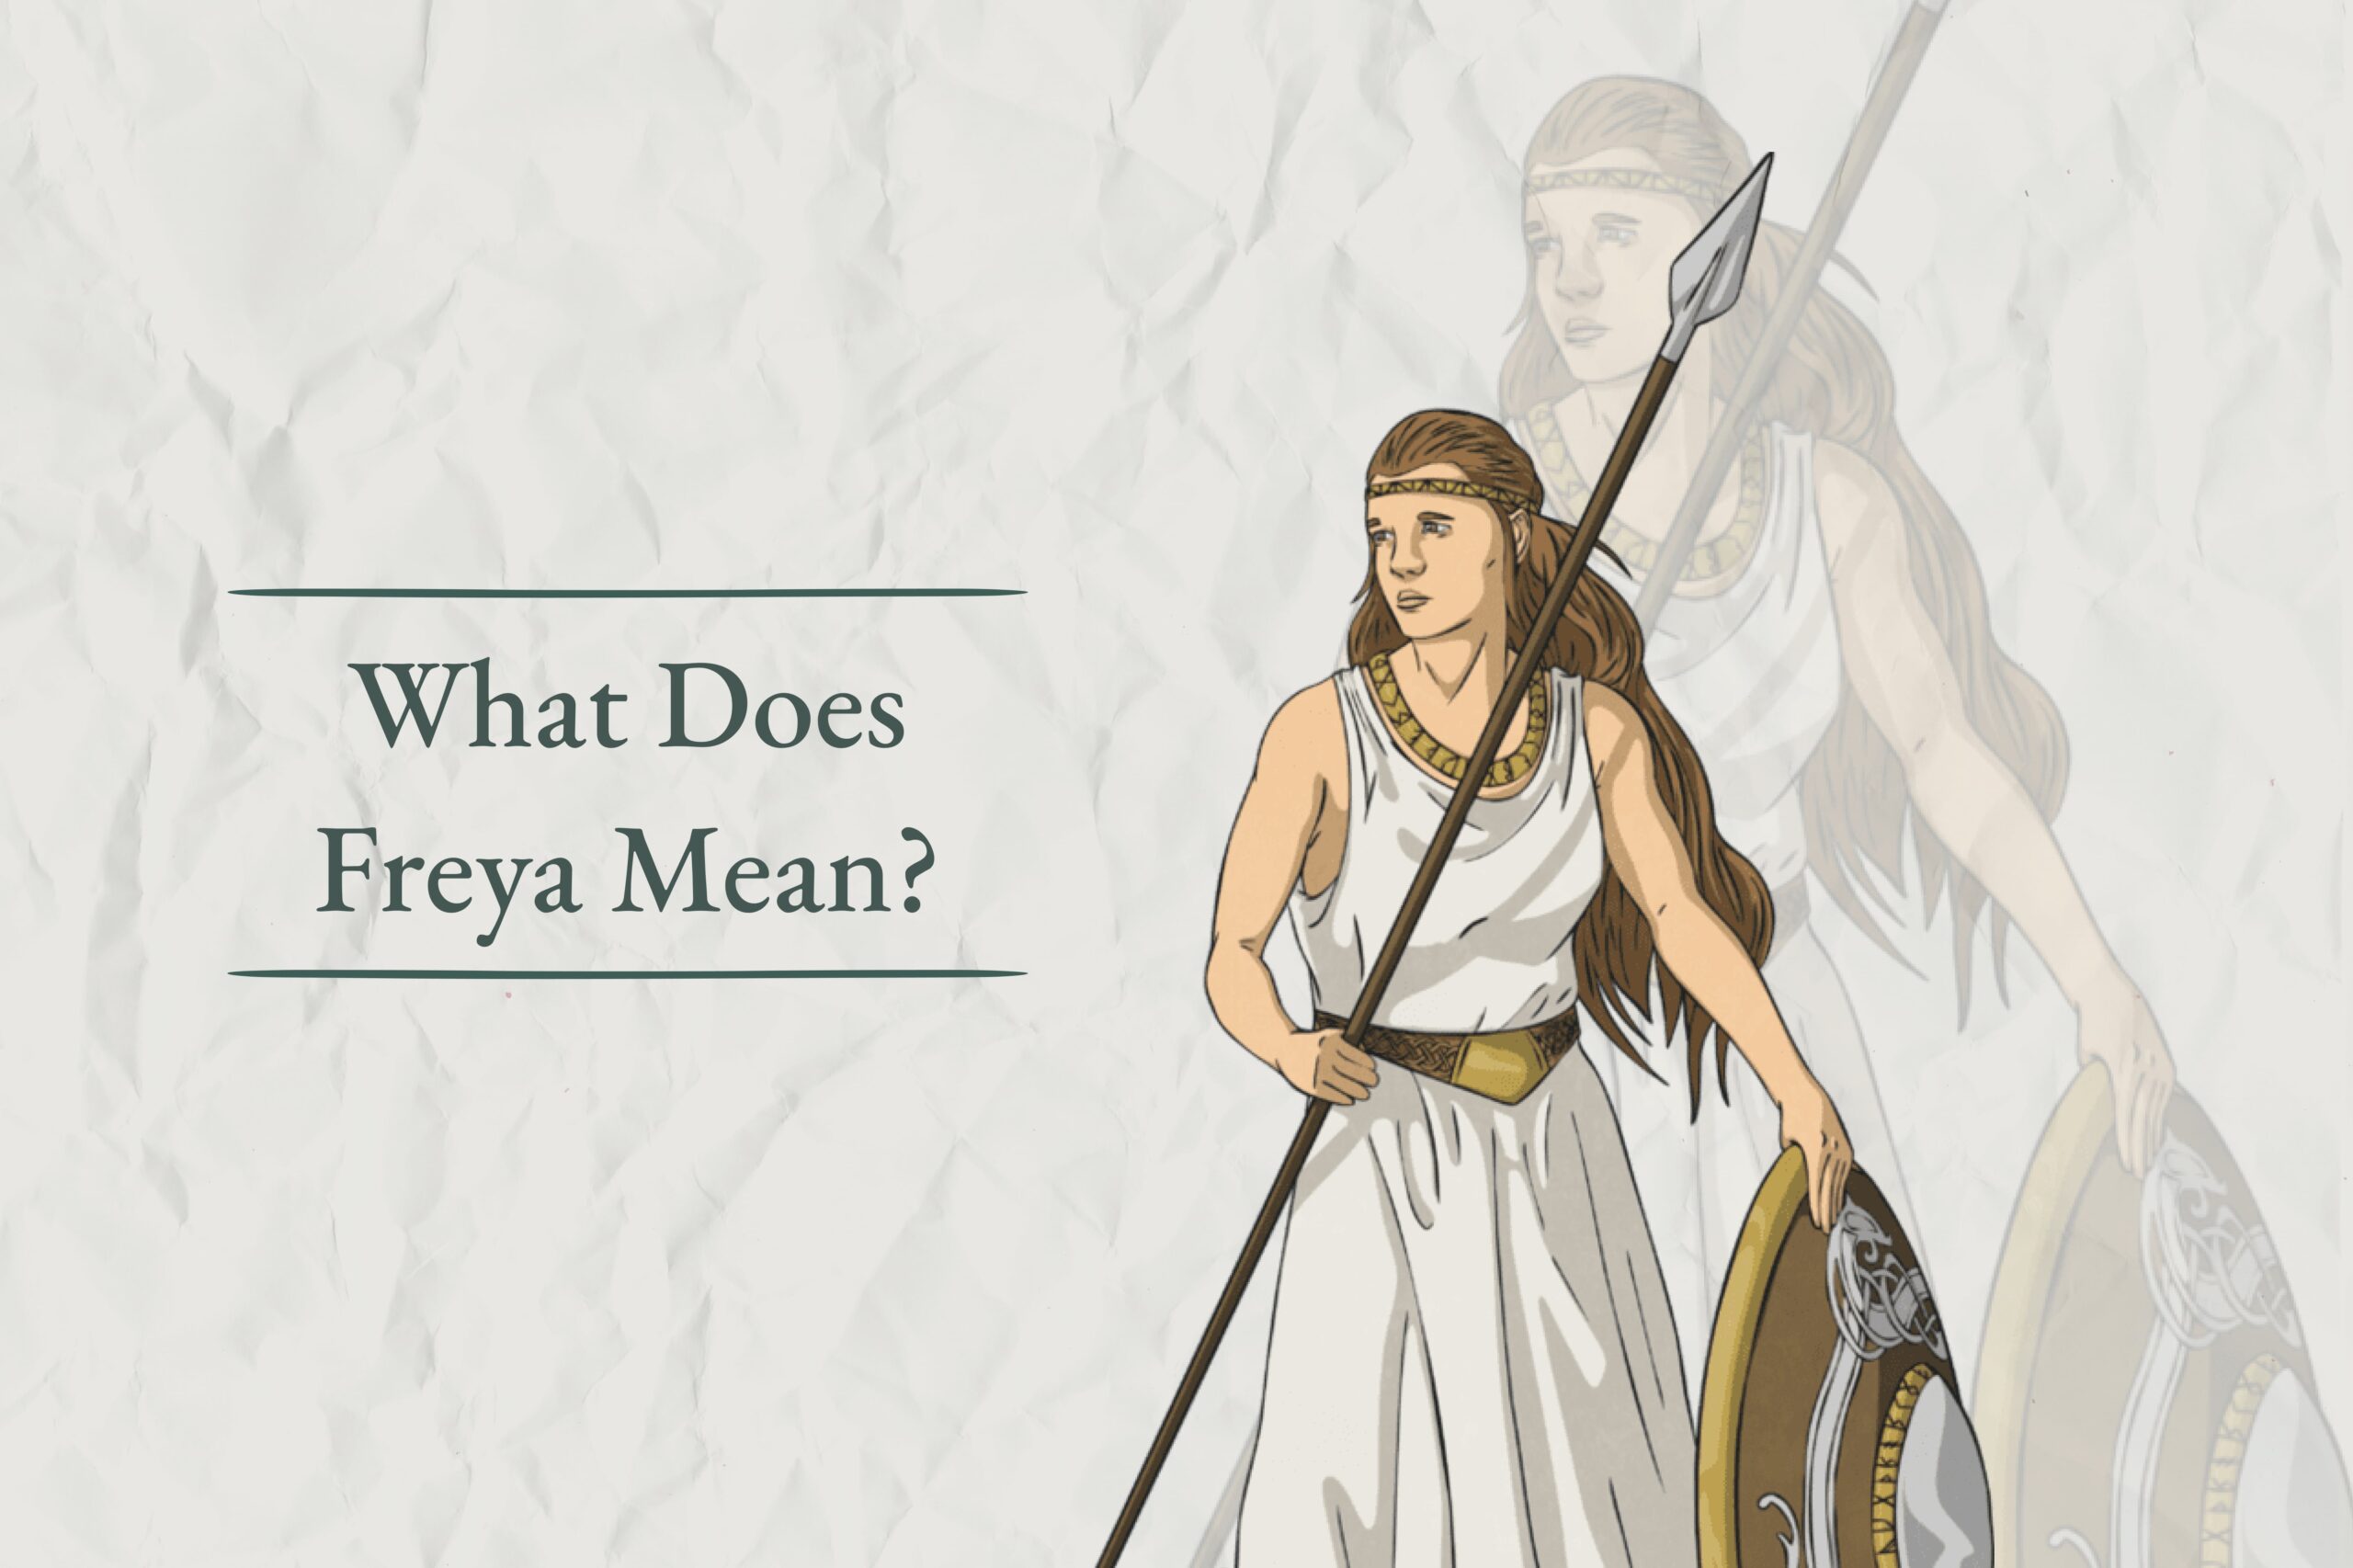 Freya meaning